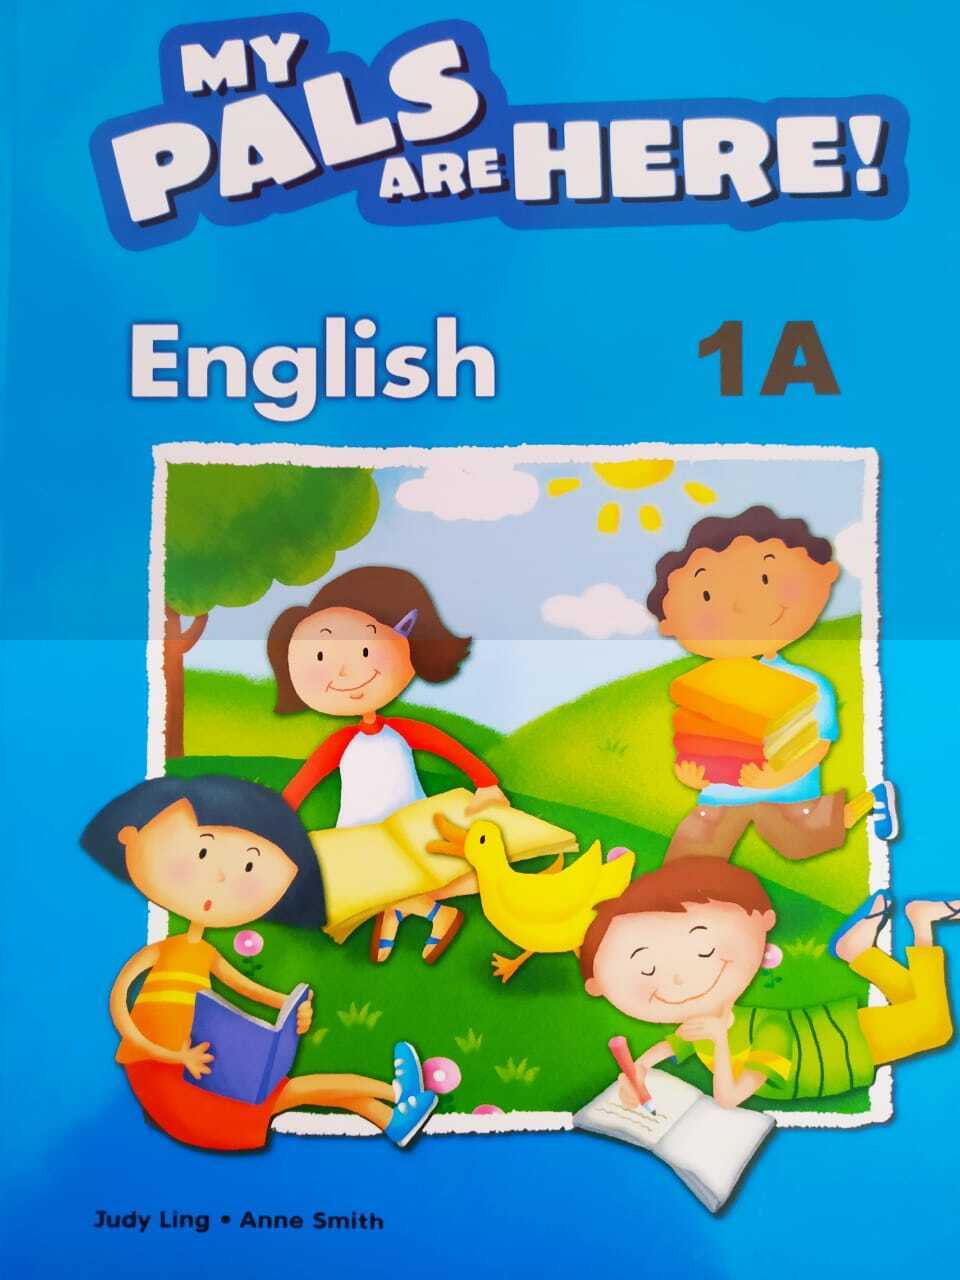 Учебник английского языка team up. General English учебник. My Pals are here. Английский язык 2006 год. Islands учебник английского.